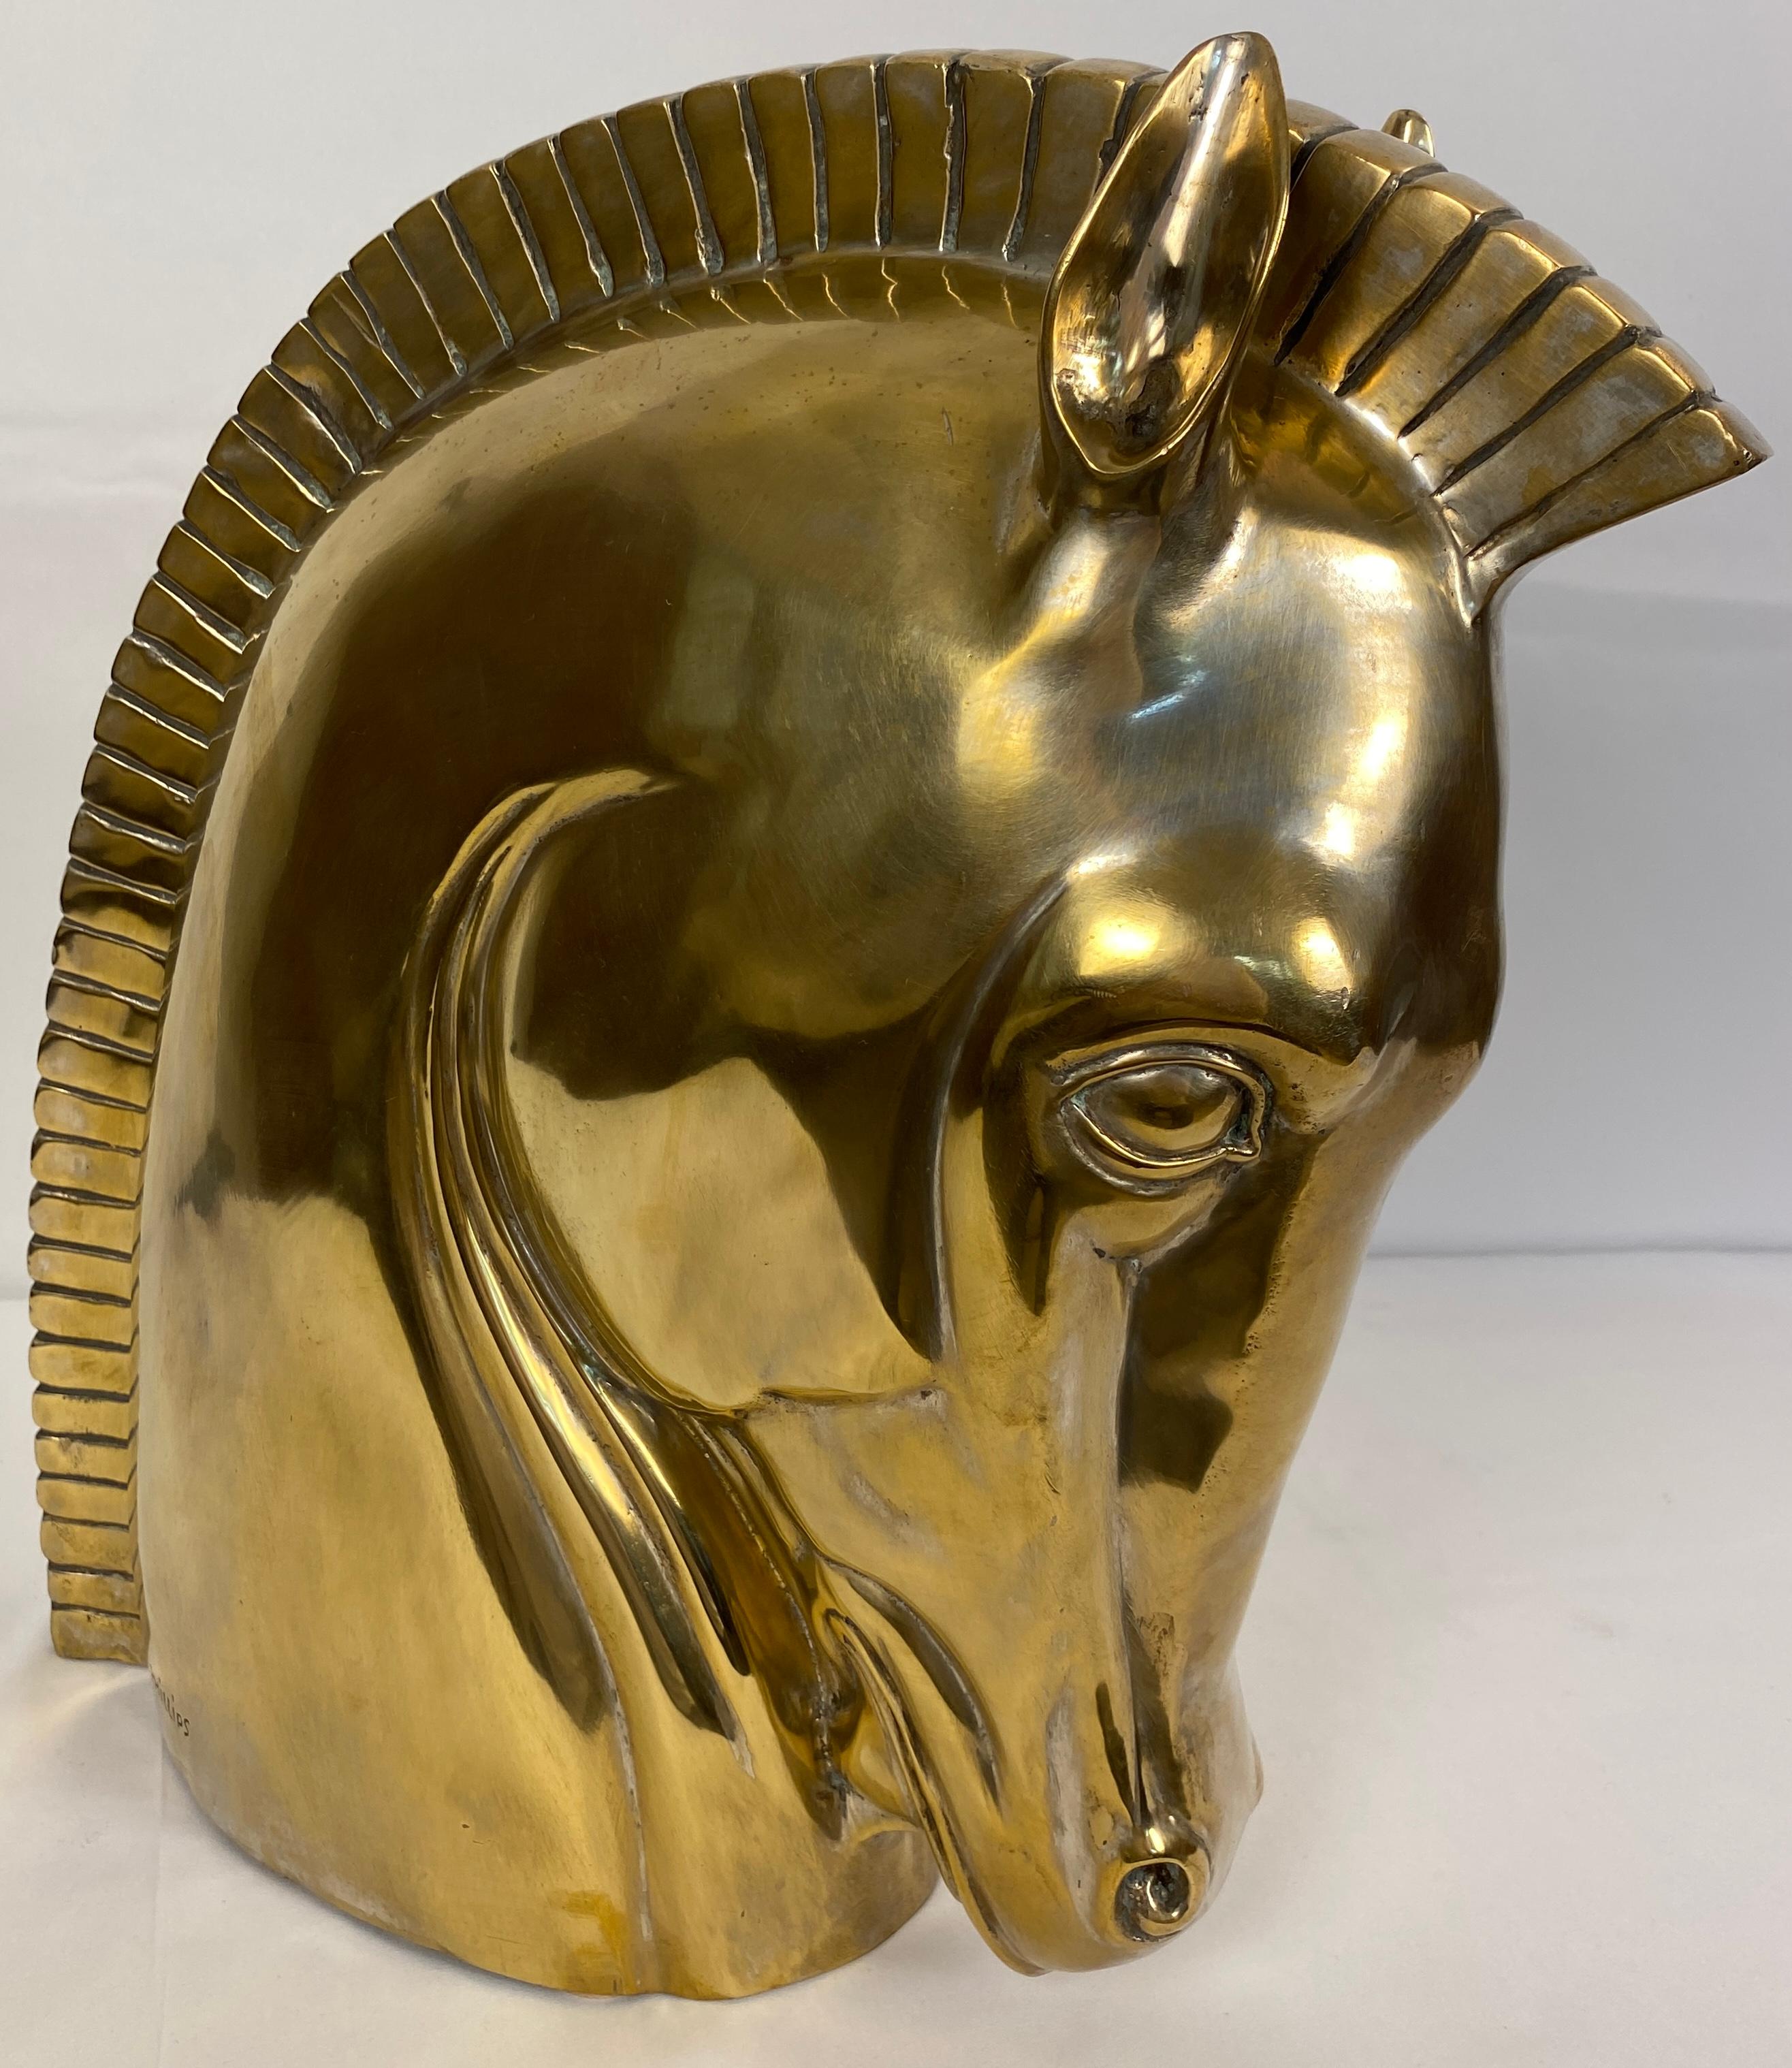 Un superbe design moderne d'une tête de cheval de Troie en bronze.
Fabriqué en bronze moulé avec une belle patine d'ancienneté.
Signé Phillips. 

Cette sculpture de tête de cheval de Troie en bronze rehaussera tout décor moderne ou contemporain.